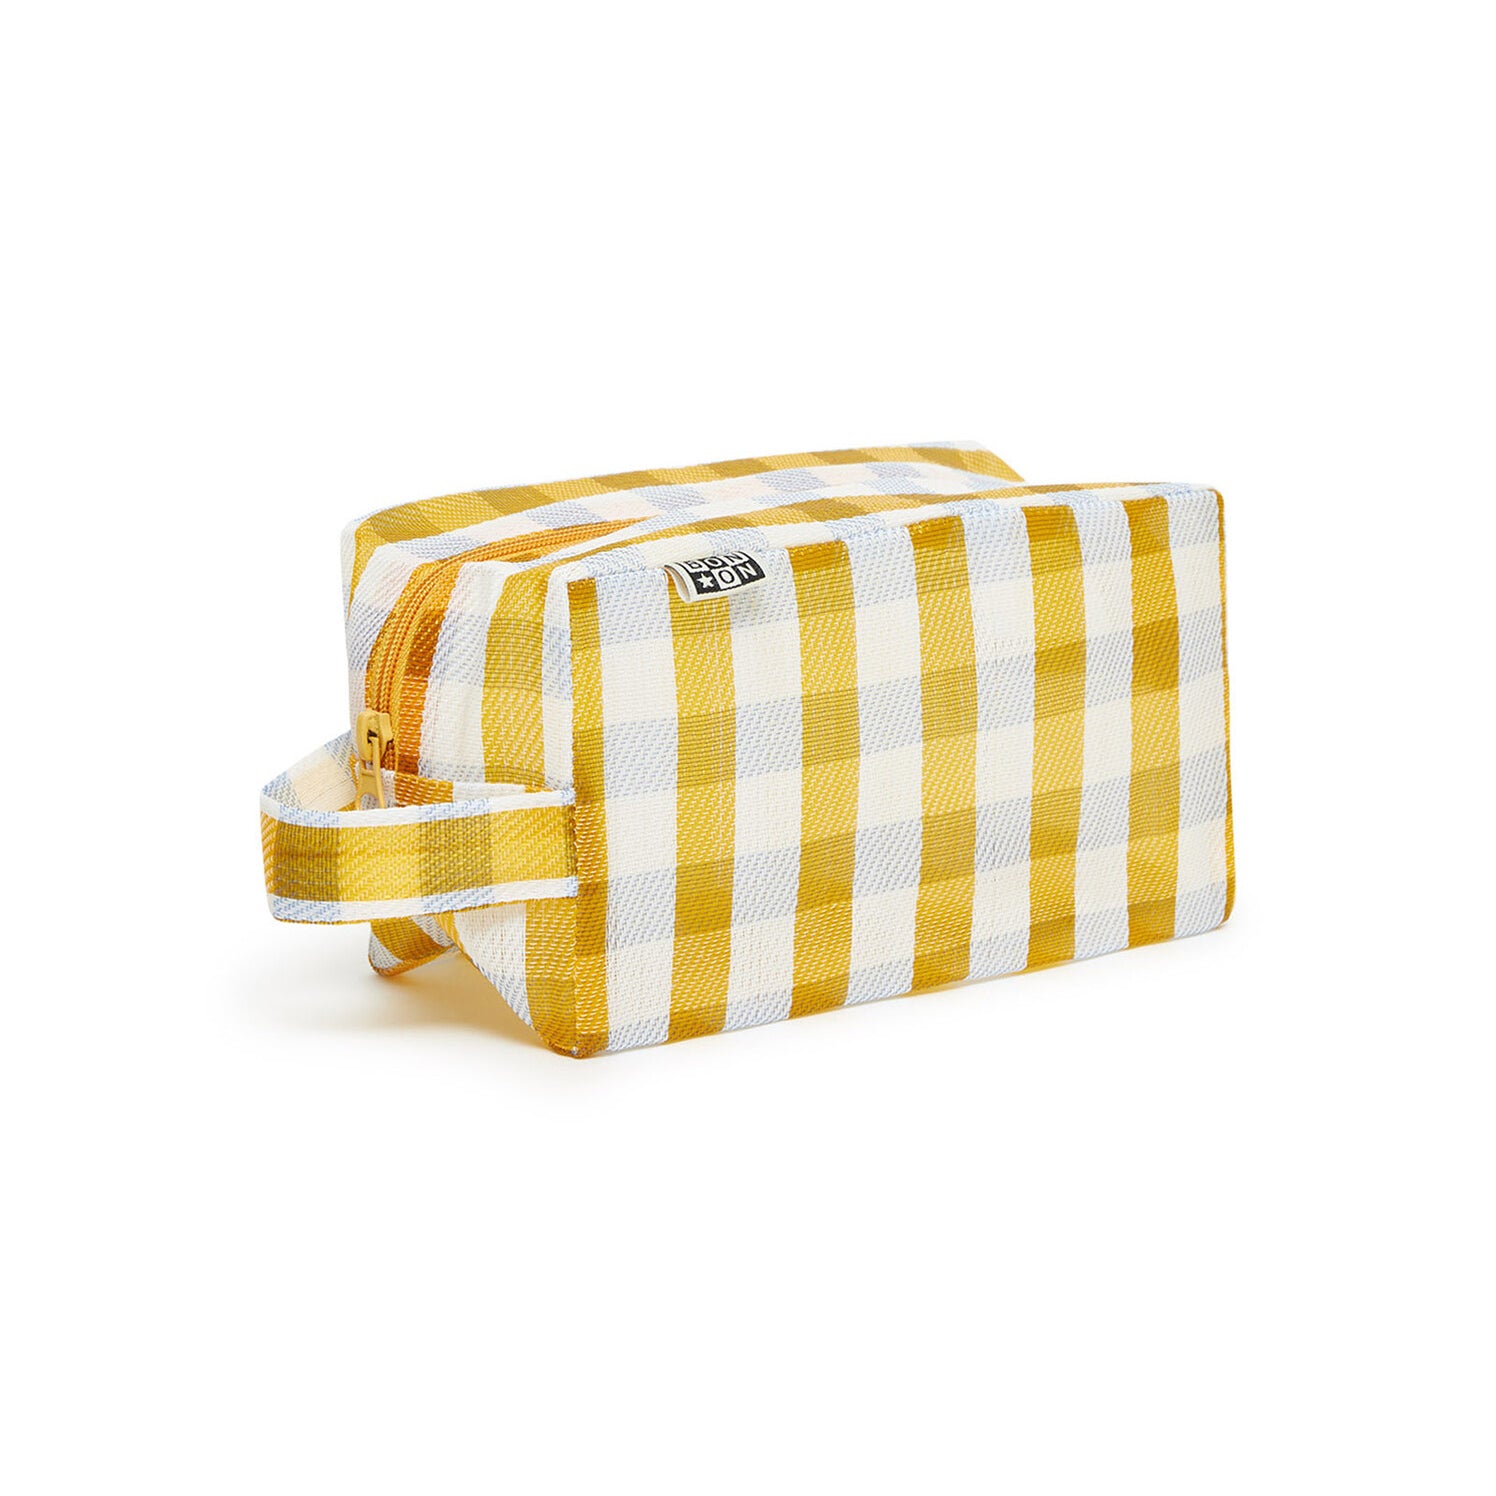 Yellow Check Printed Bag